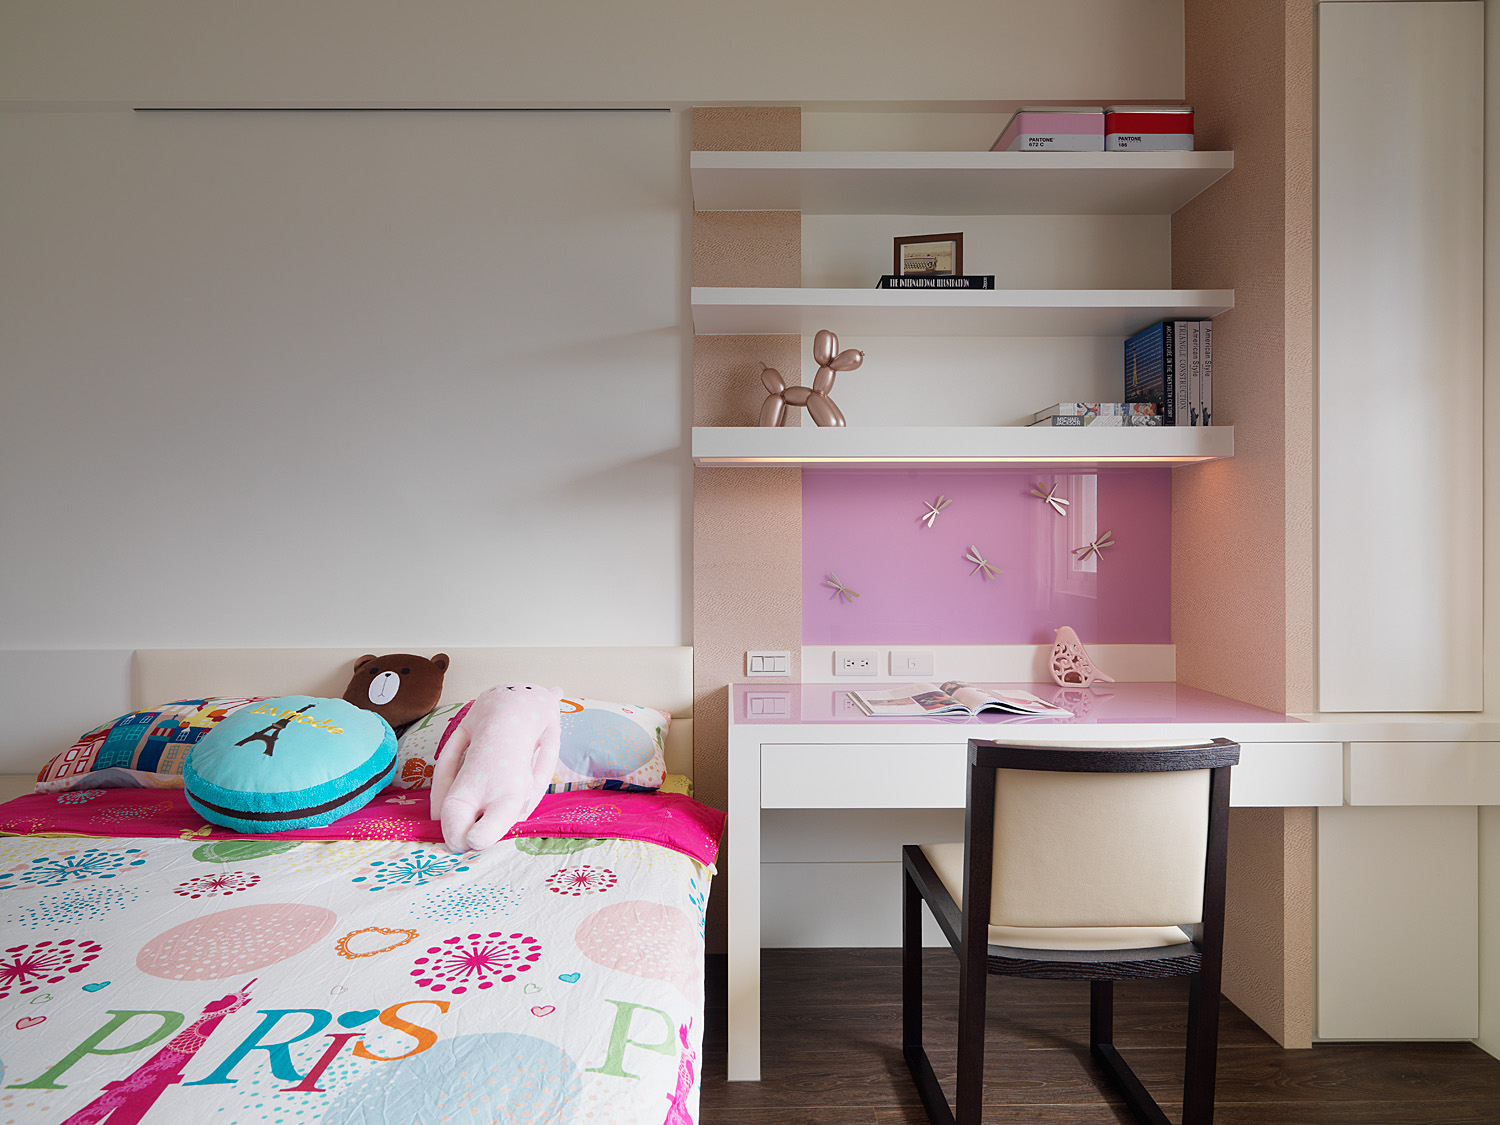 儿童房通过卡通的配色，以及环保的材料搭配，塑造出活力满满的居住环境。